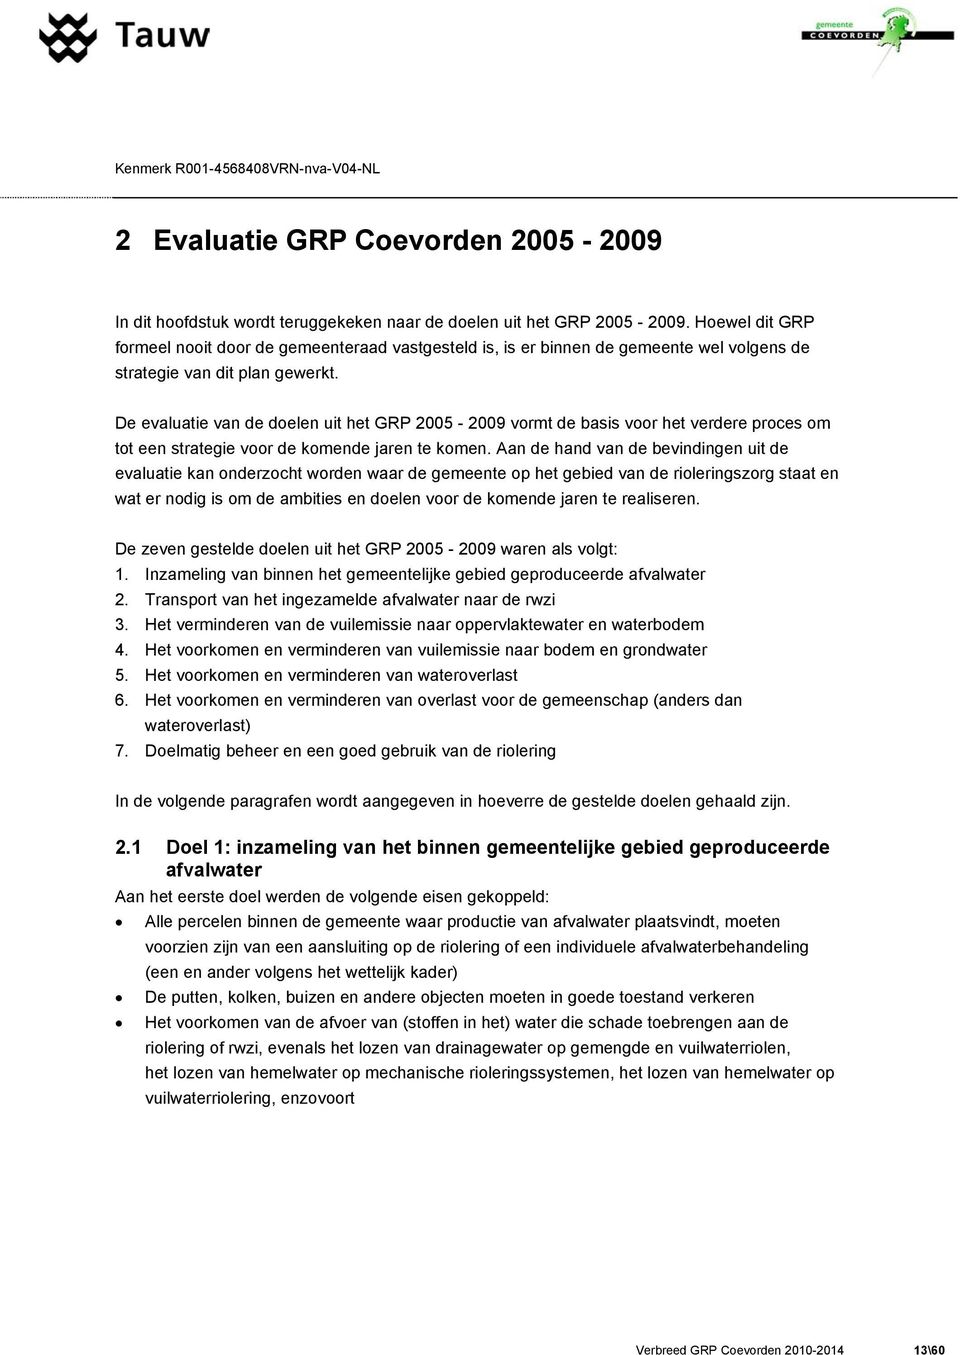 De evaluatie van de doelen uit het GRP 2005-2009 vormt de basis voor het verdere proces om tot een strategie voor de komende jaren te komen.